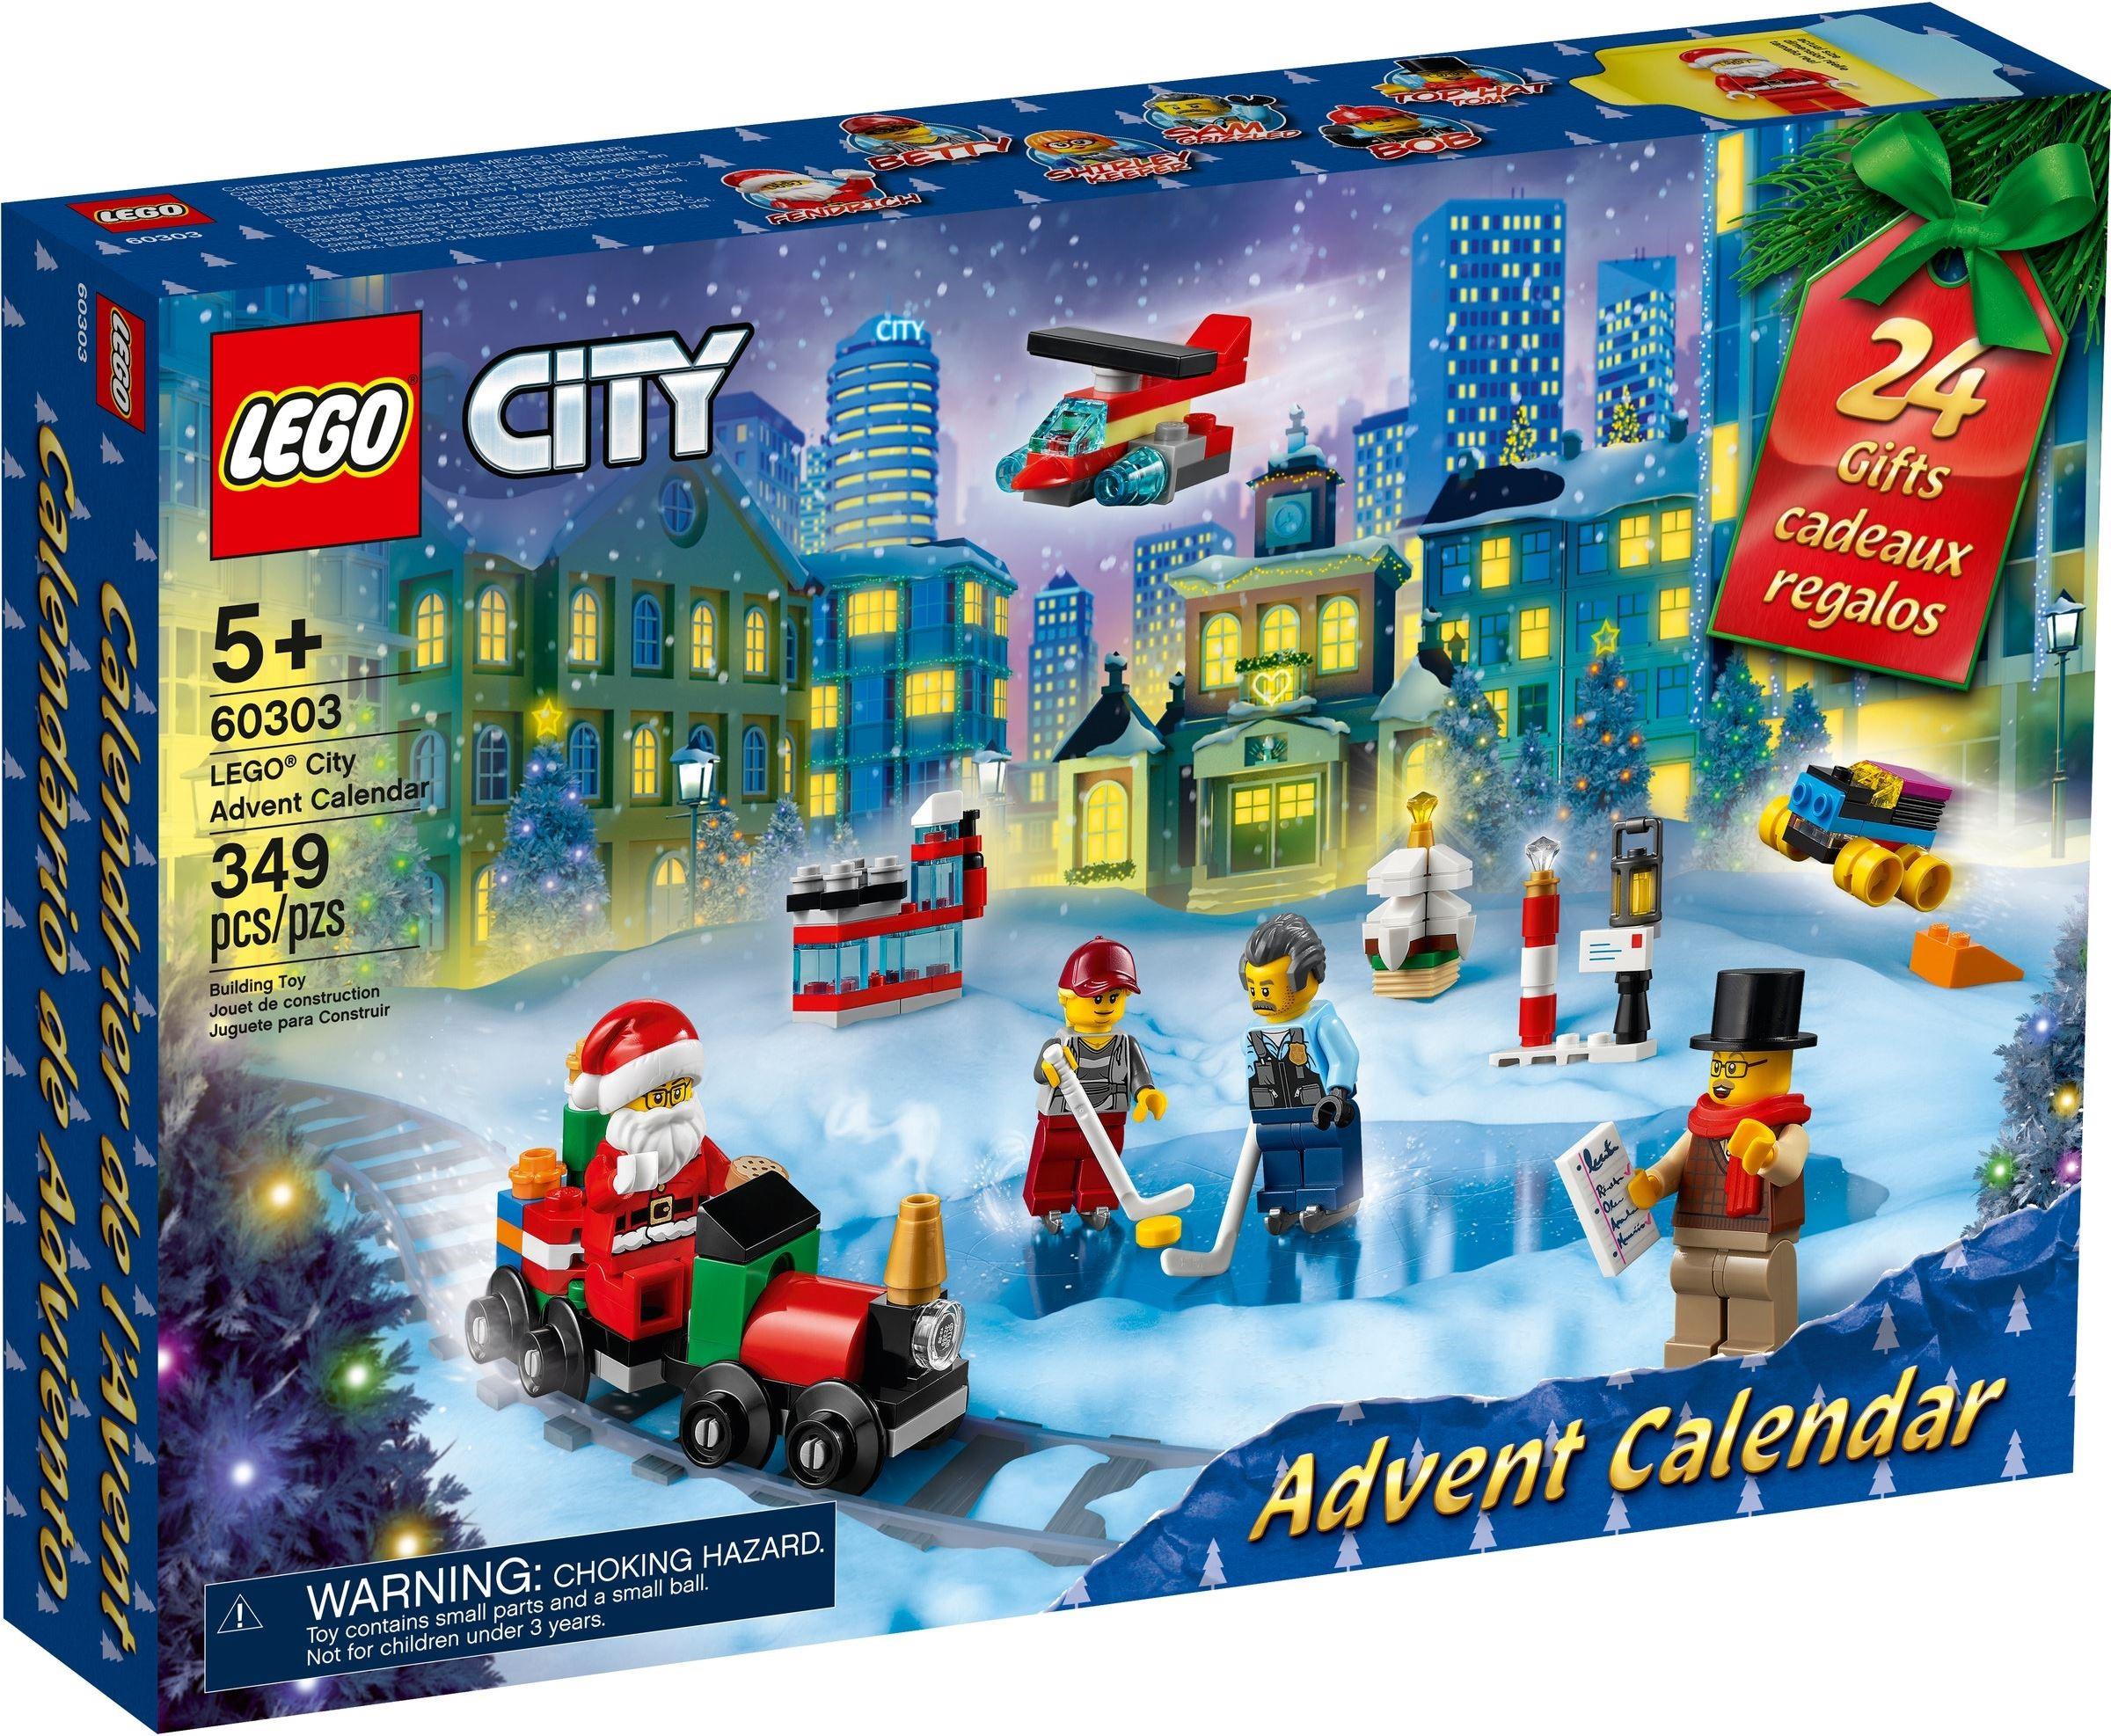 BRAND NEW FACTORY SEALED Christmas LEGO City Advent Calendar 2019 #60235 